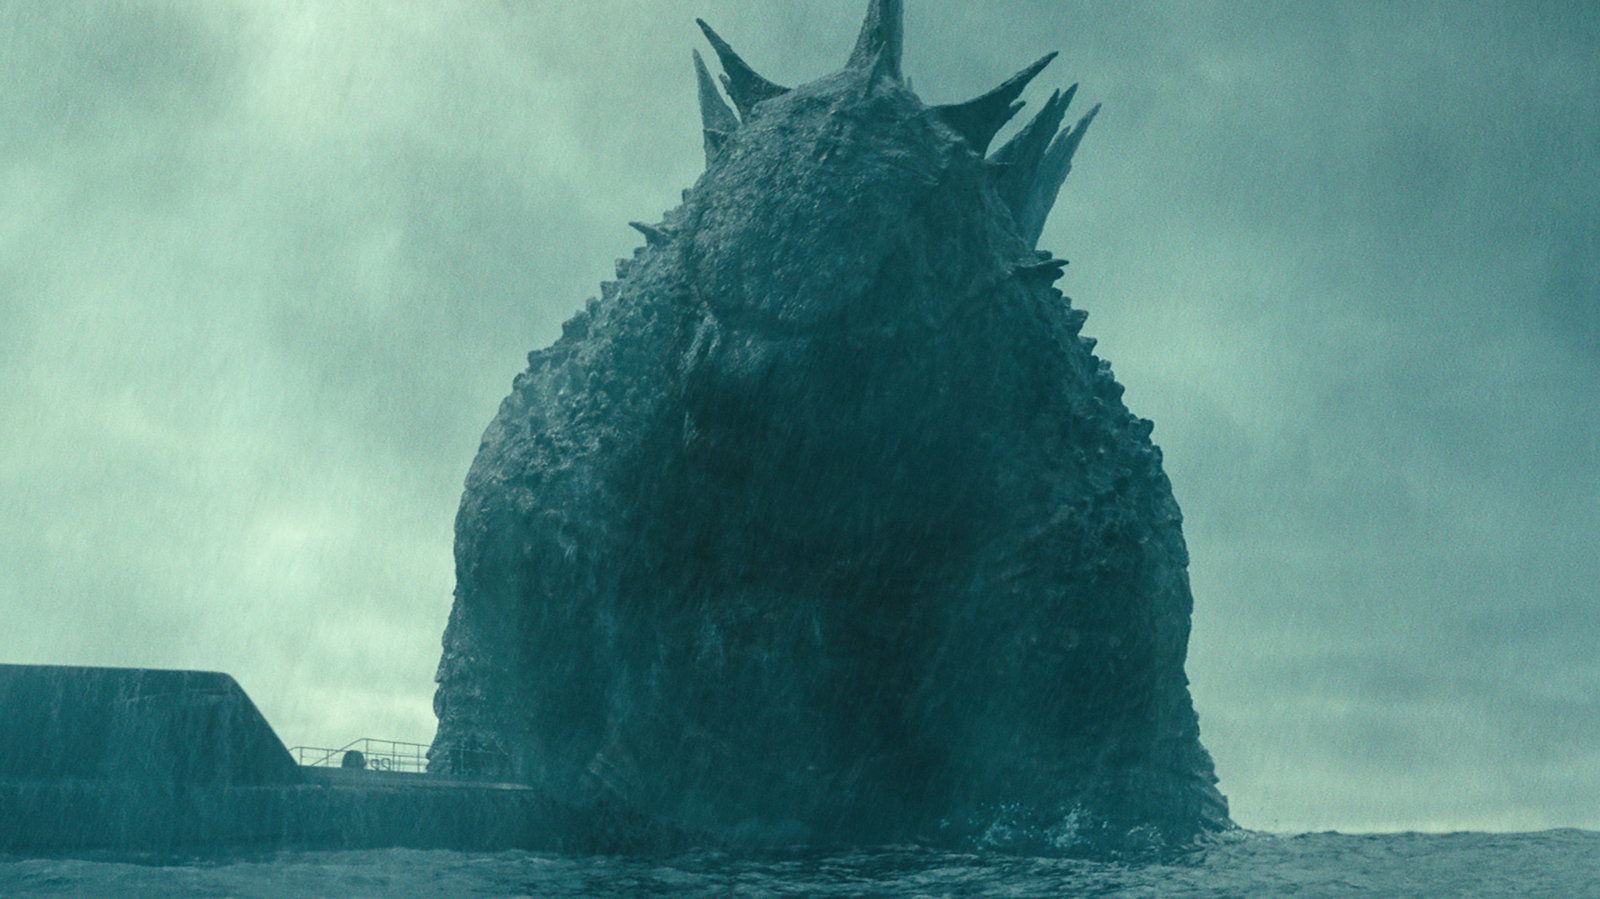 Godzilla: King of Monsters